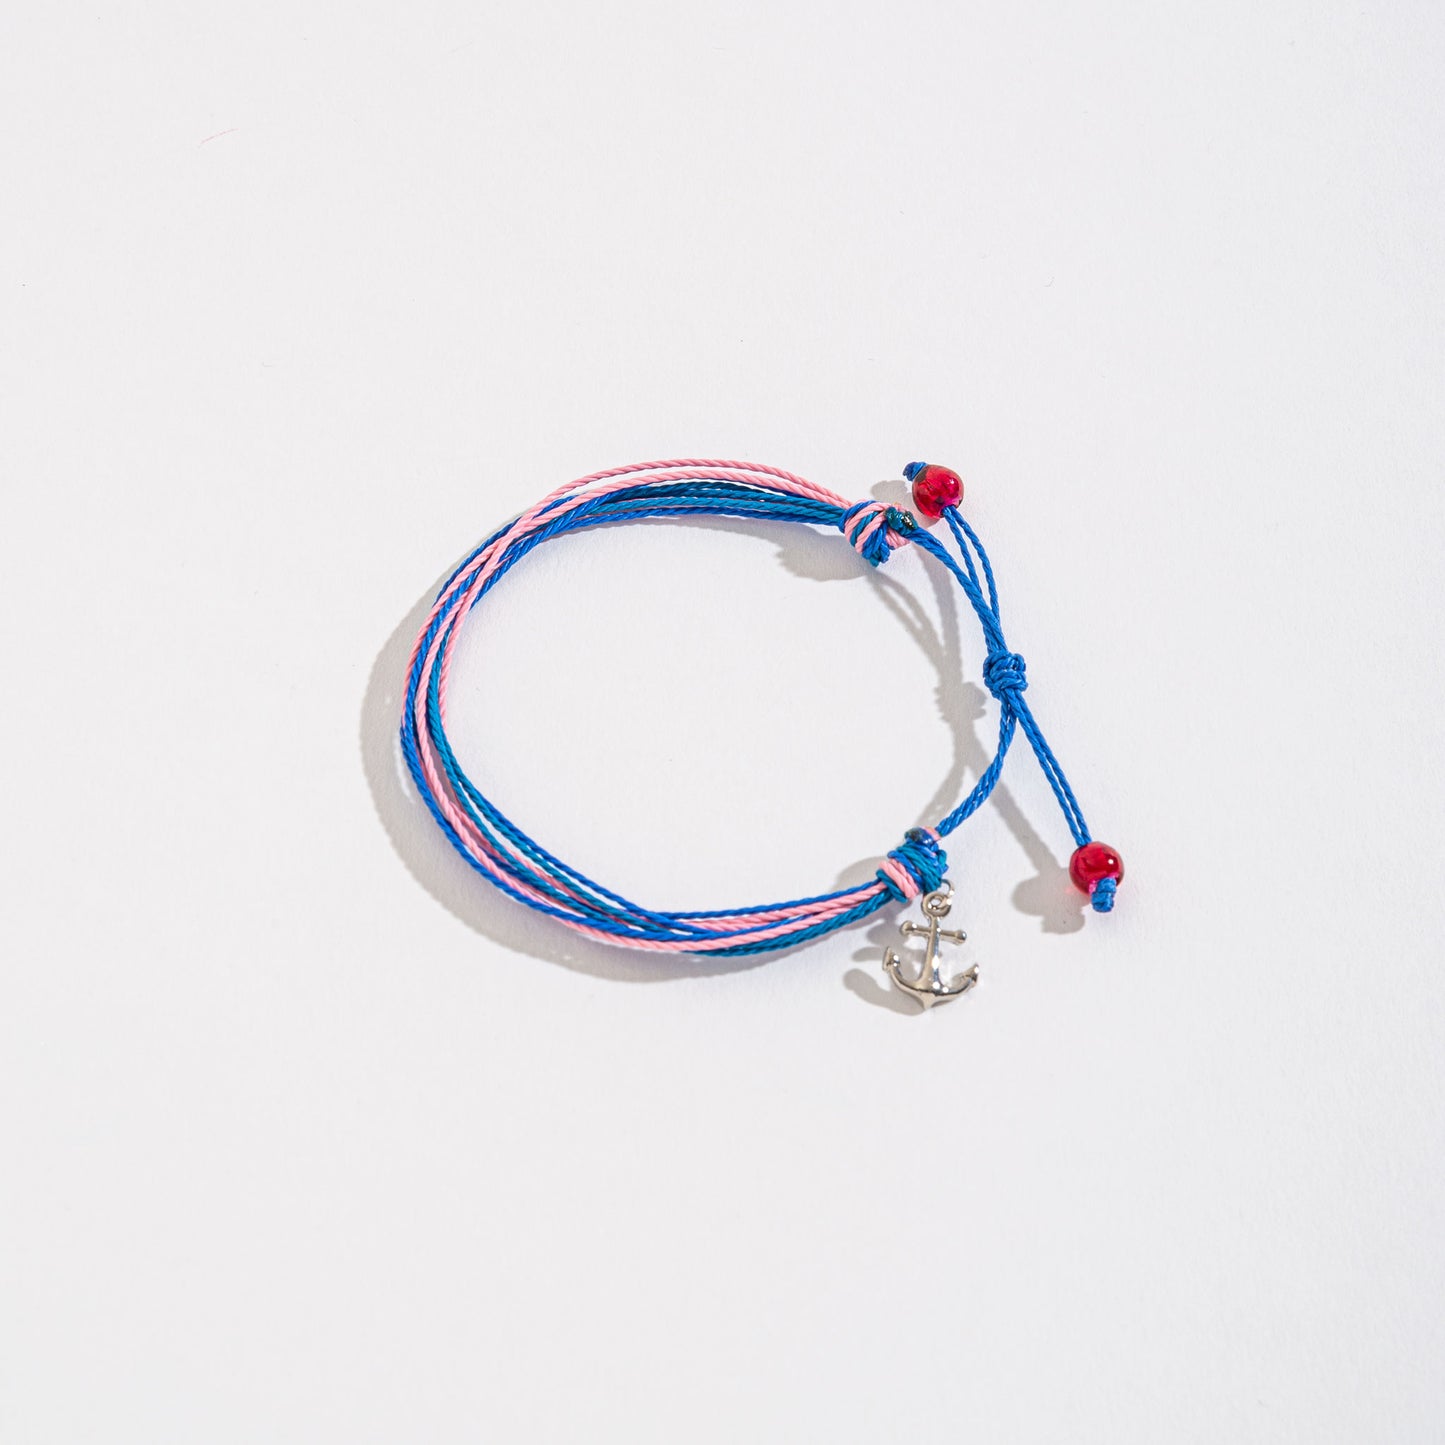 Nautical Themed Charm Threaded Bracelet